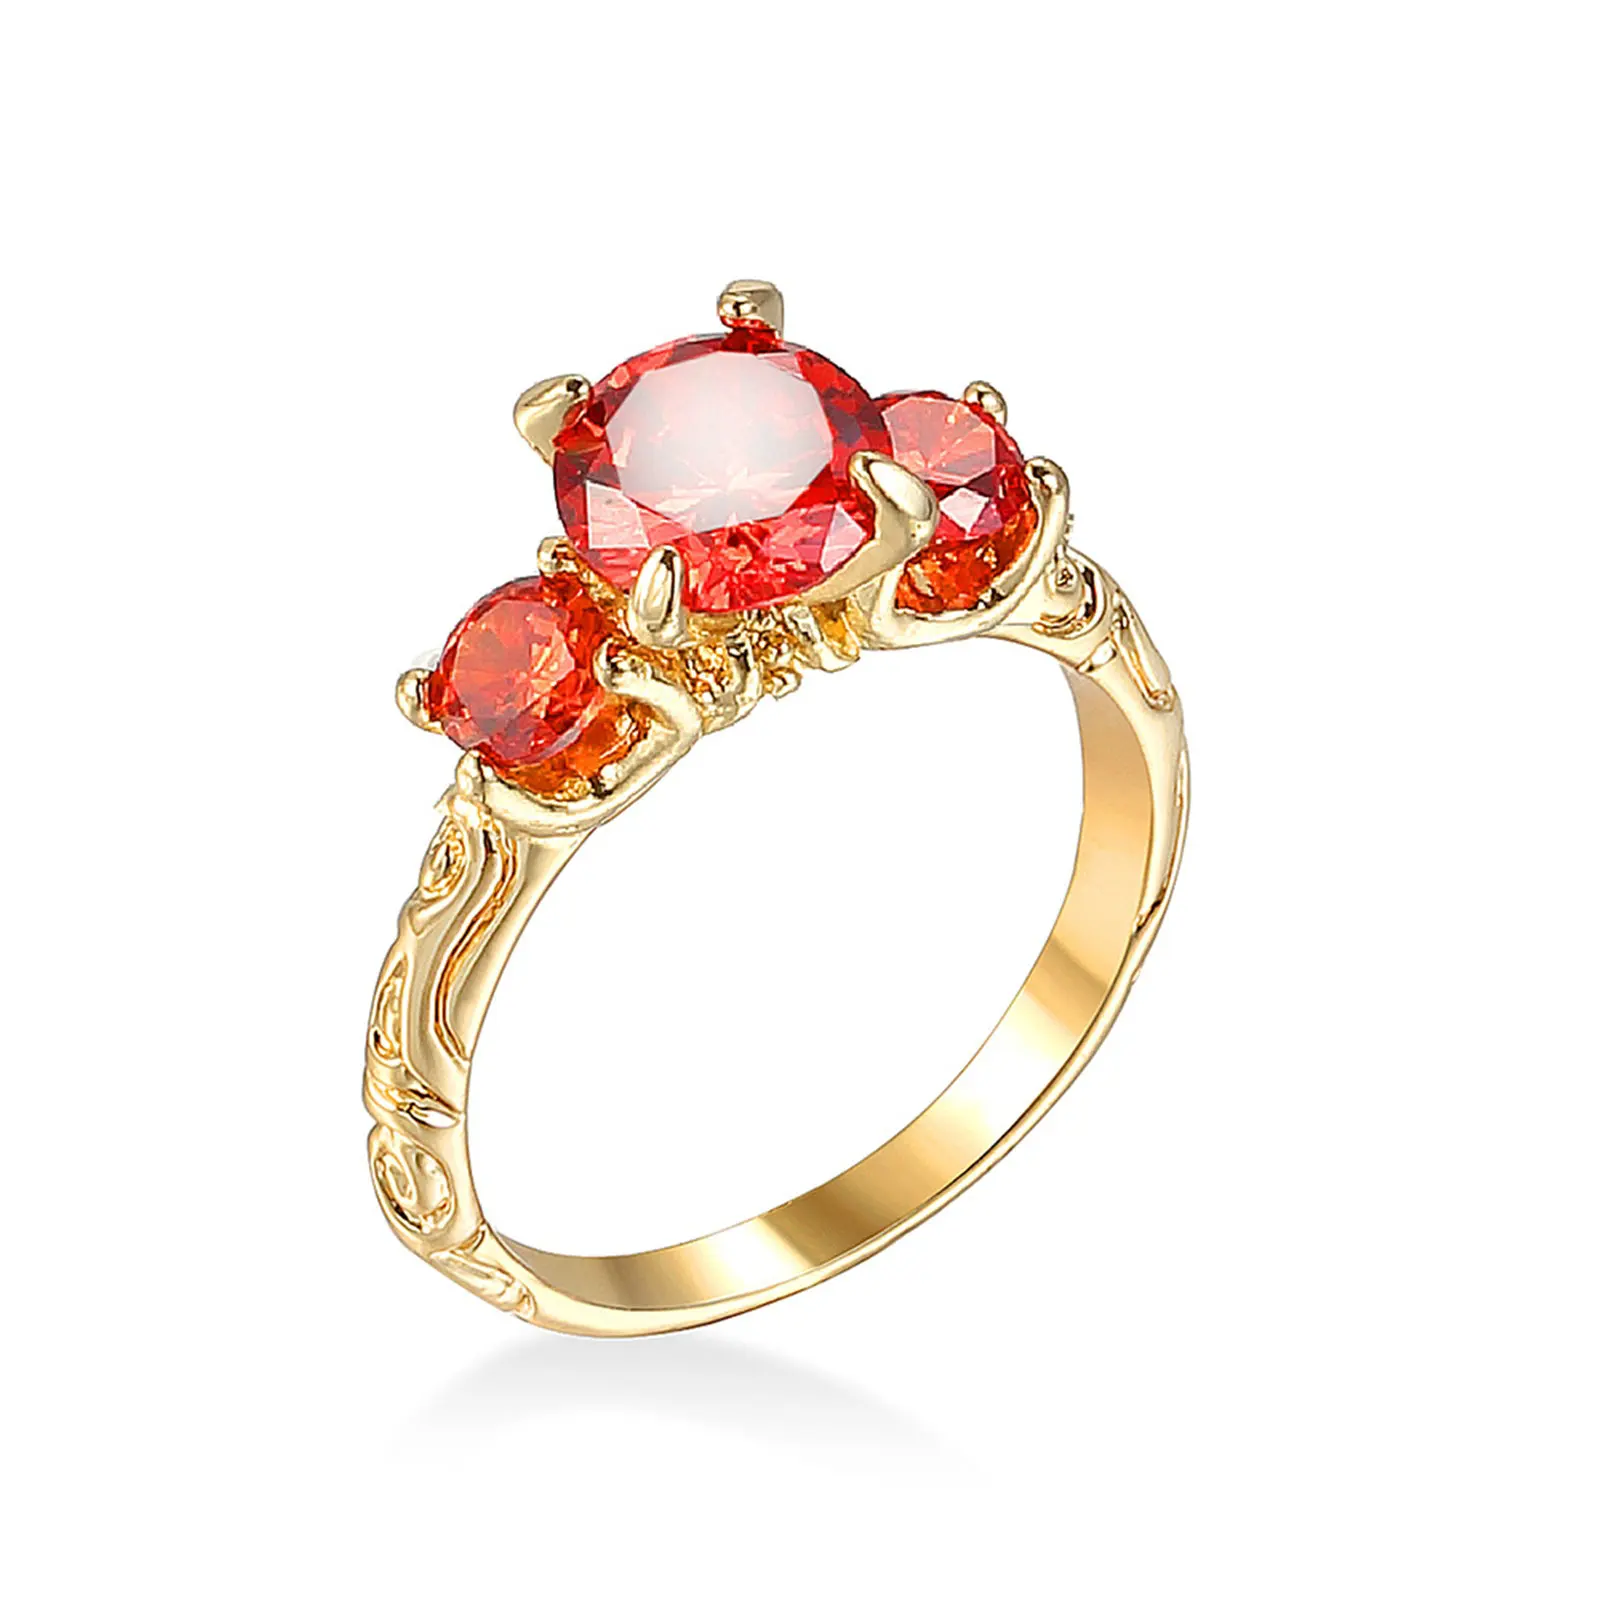 

Женский комплект из кольца и сердца, винтажное ювелирное изделие из меди с красным крупным изящным драгоценным камнем